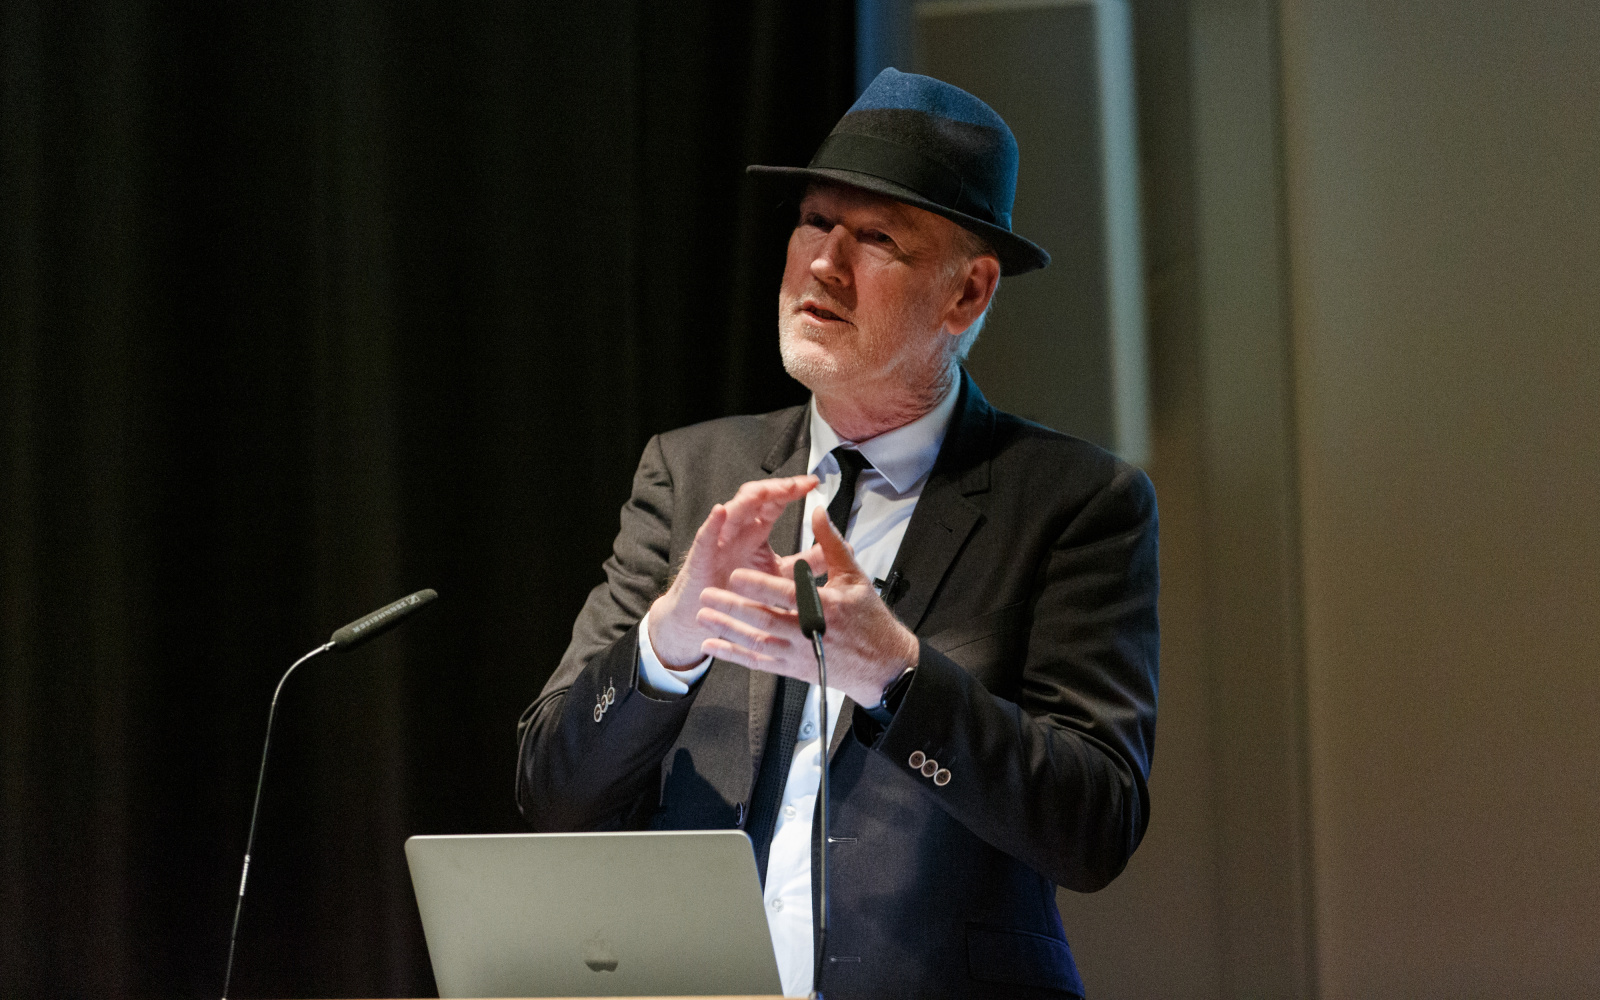 Zu sehen ist Thomas Paul, Medienkünstler und Professor in Anzug mit Hut, wie er hinter einem Rednerpult mit Laptop steht und gestikuliert.